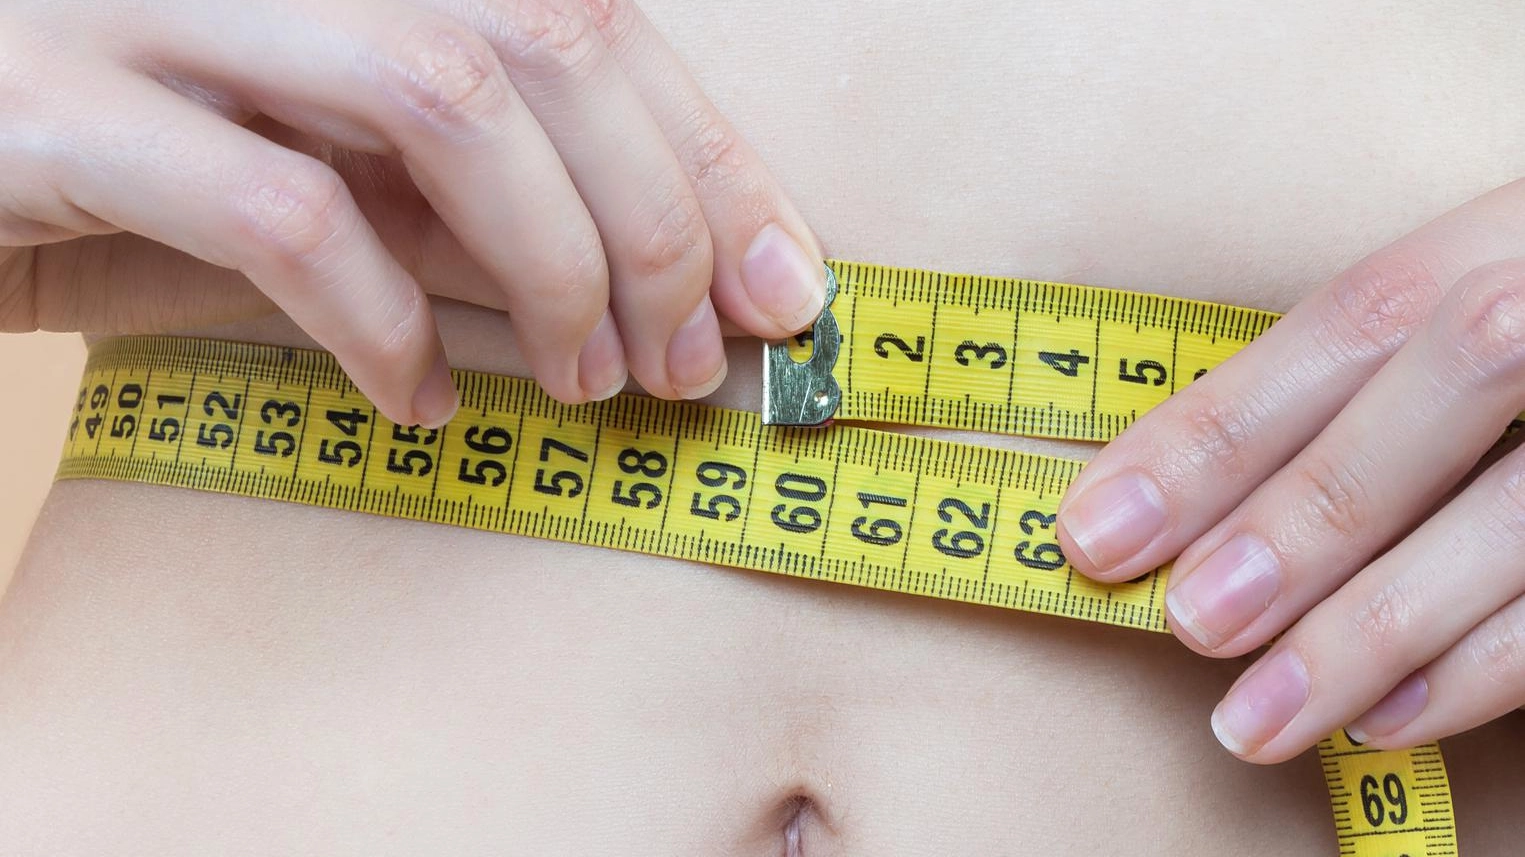 Indagine sulla derisione del corpo  "Nel mirino c’è il sovrappeso"